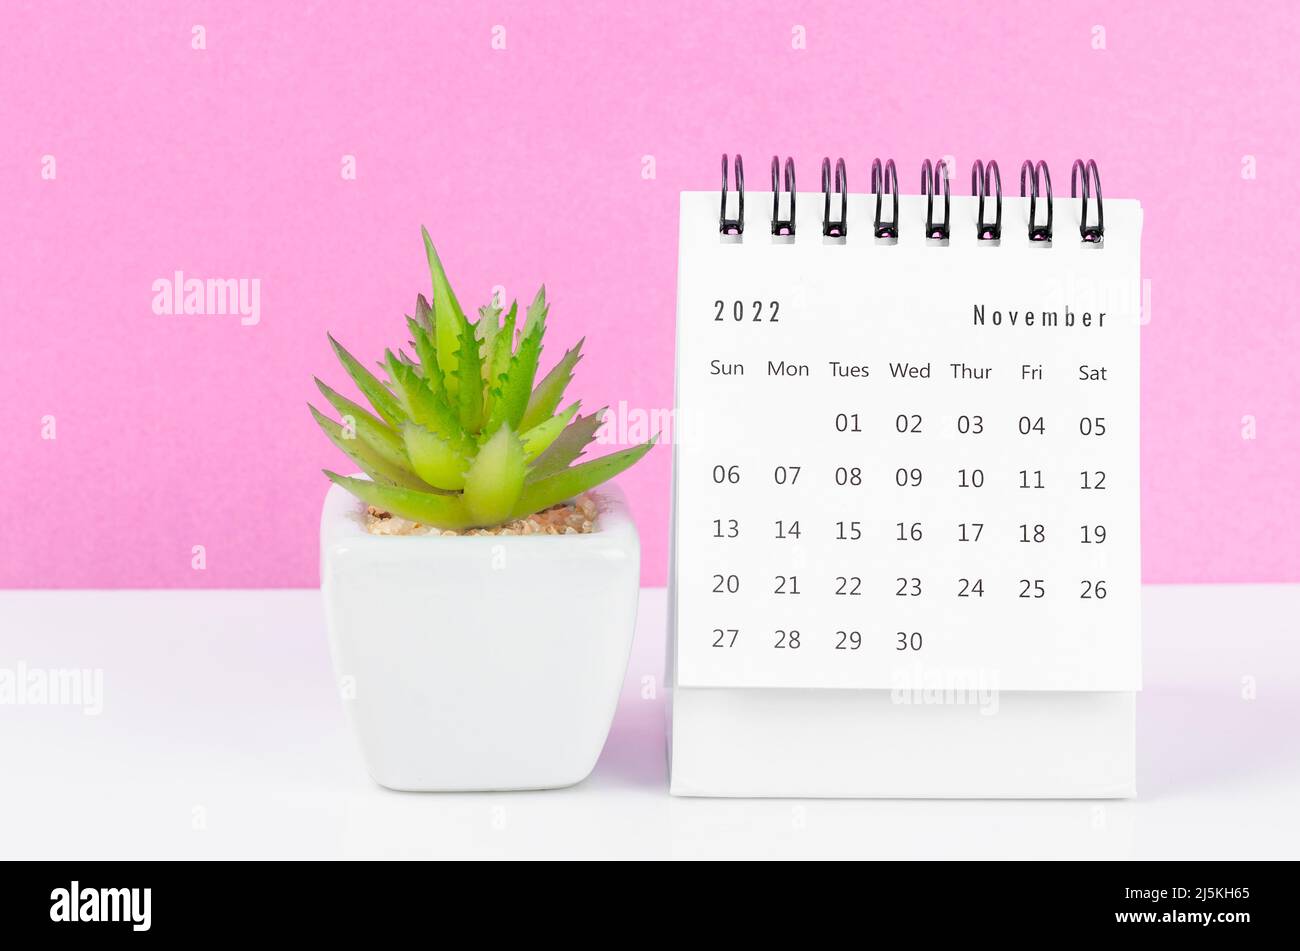 Để tiện lợi theo dõi kế hoạch công việc, lịch bàn tháng 11 năm 2022 chính là một lựa chọn tốt cho bạn. Với thiết kế đơn giản nhưng đầy màu sắc, lịch bàn 2022 sẽ giúp bạn dễ dàng lên lịch làm việc, tránh nhầm lẫn và kiểm soát thời gian tốt hơn.